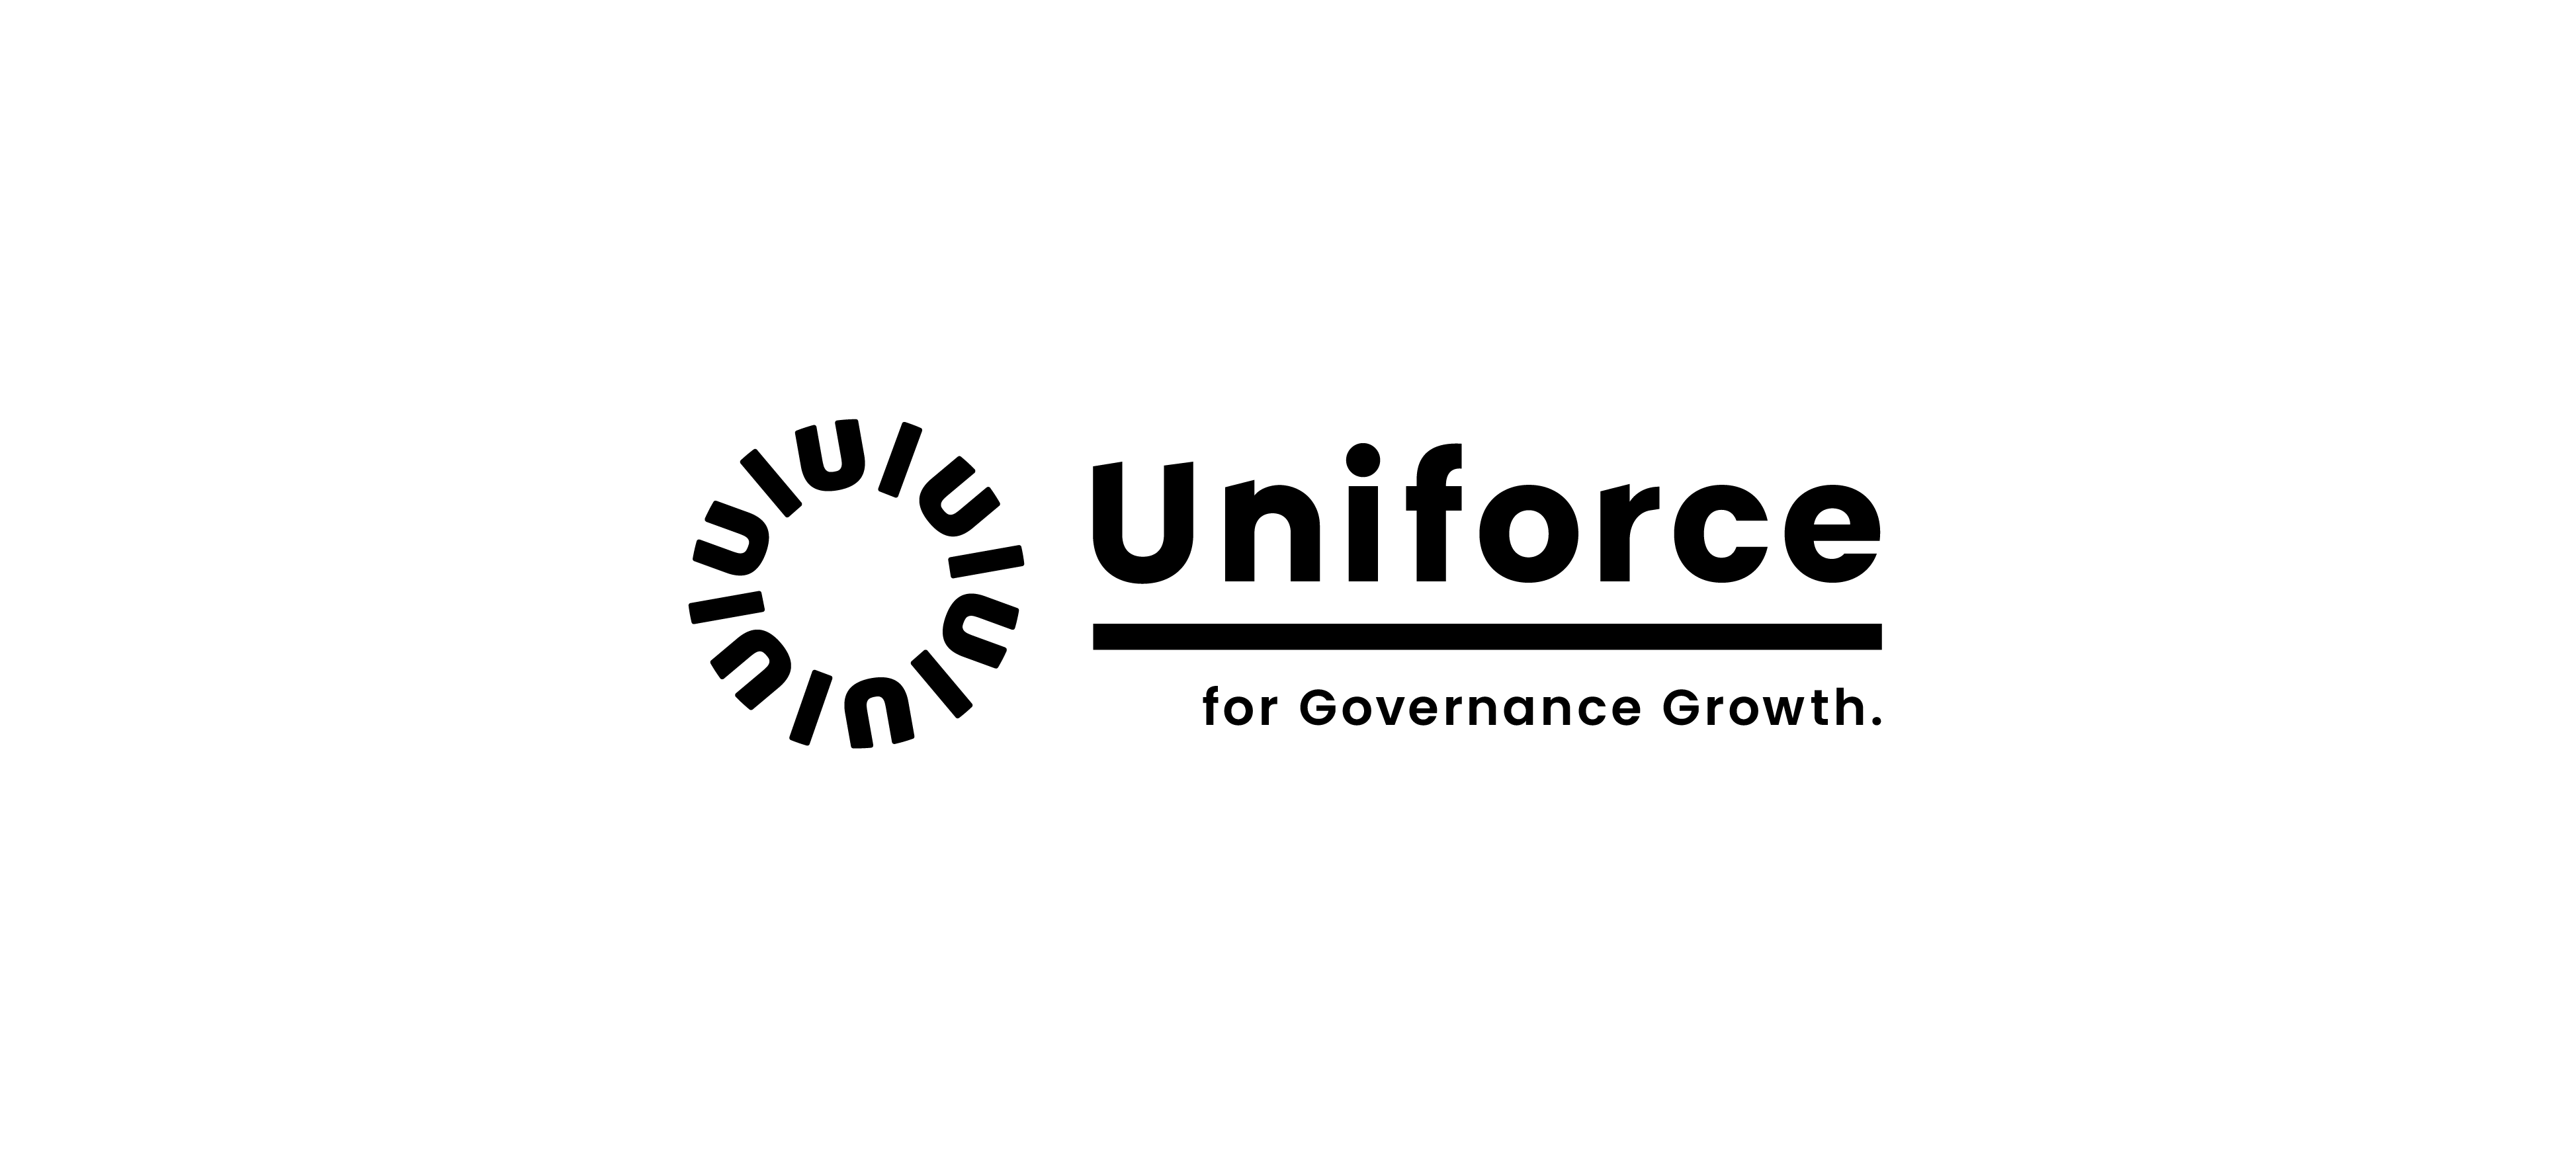 Uniforceサービス利用規約改訂のお知らせ